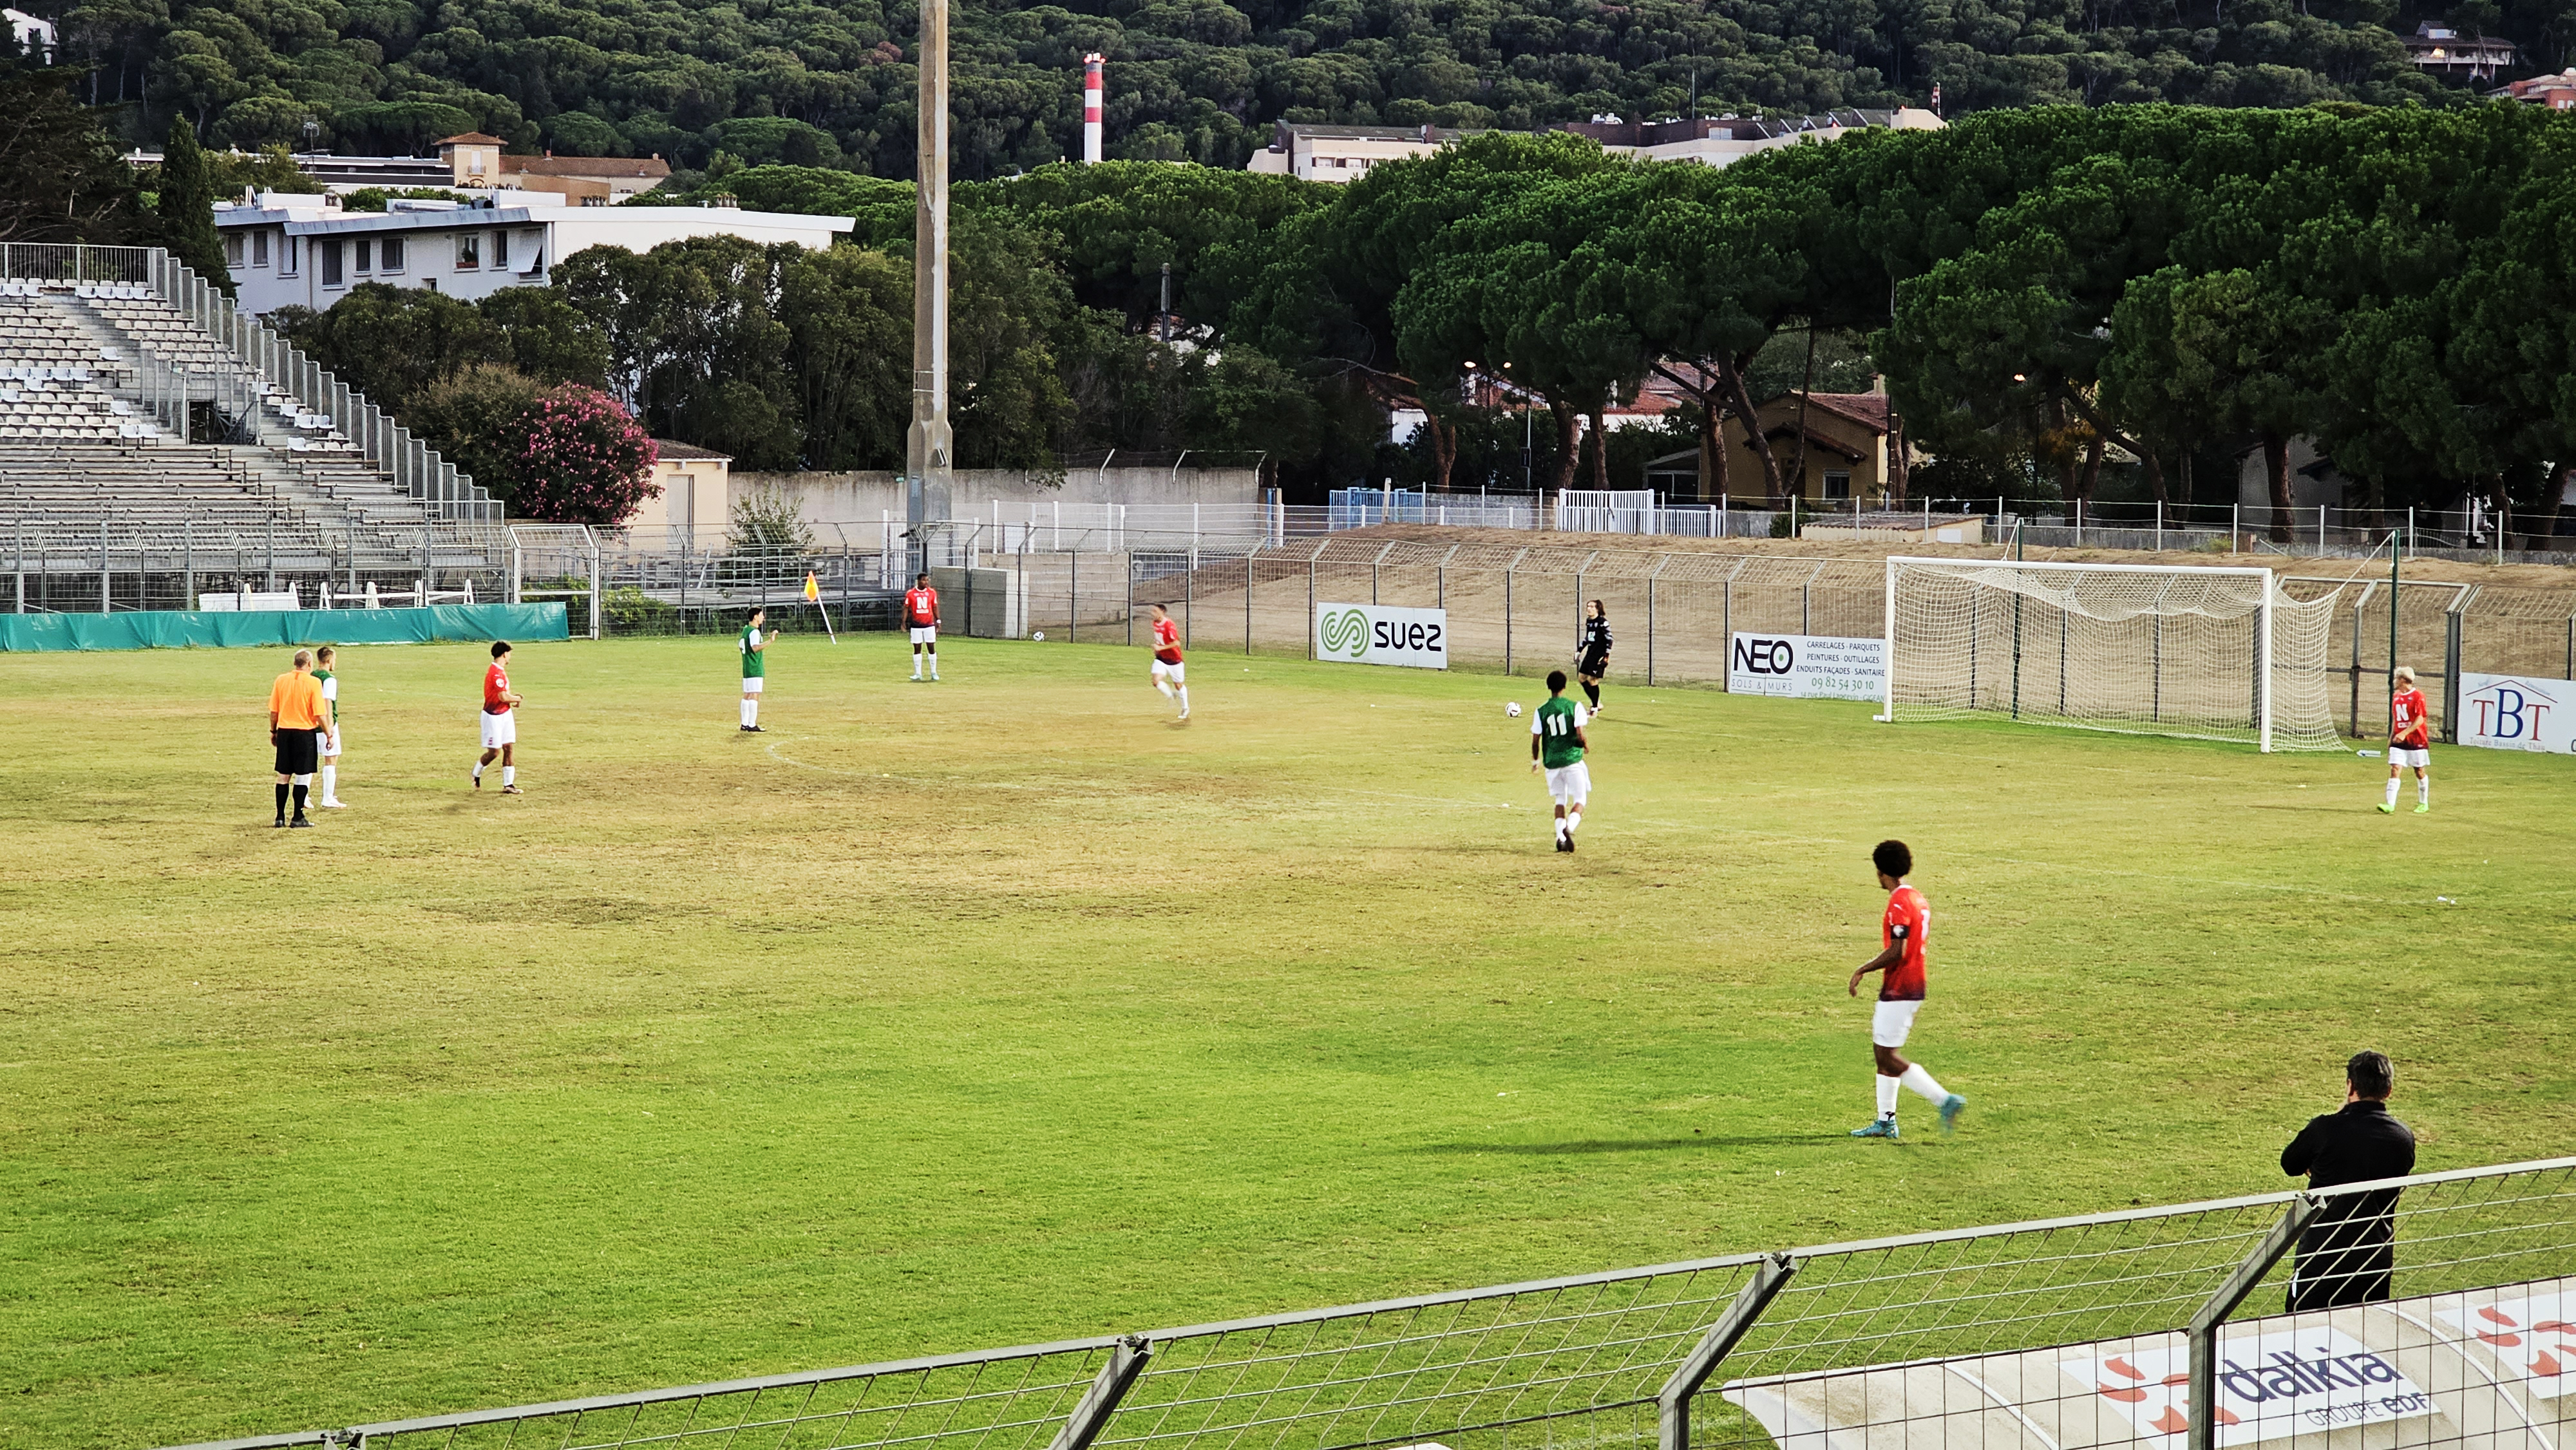 Football Agde - La réserve du RCO Agde s'impose sur la pelouse de Sète en Coupe d'Occitanie